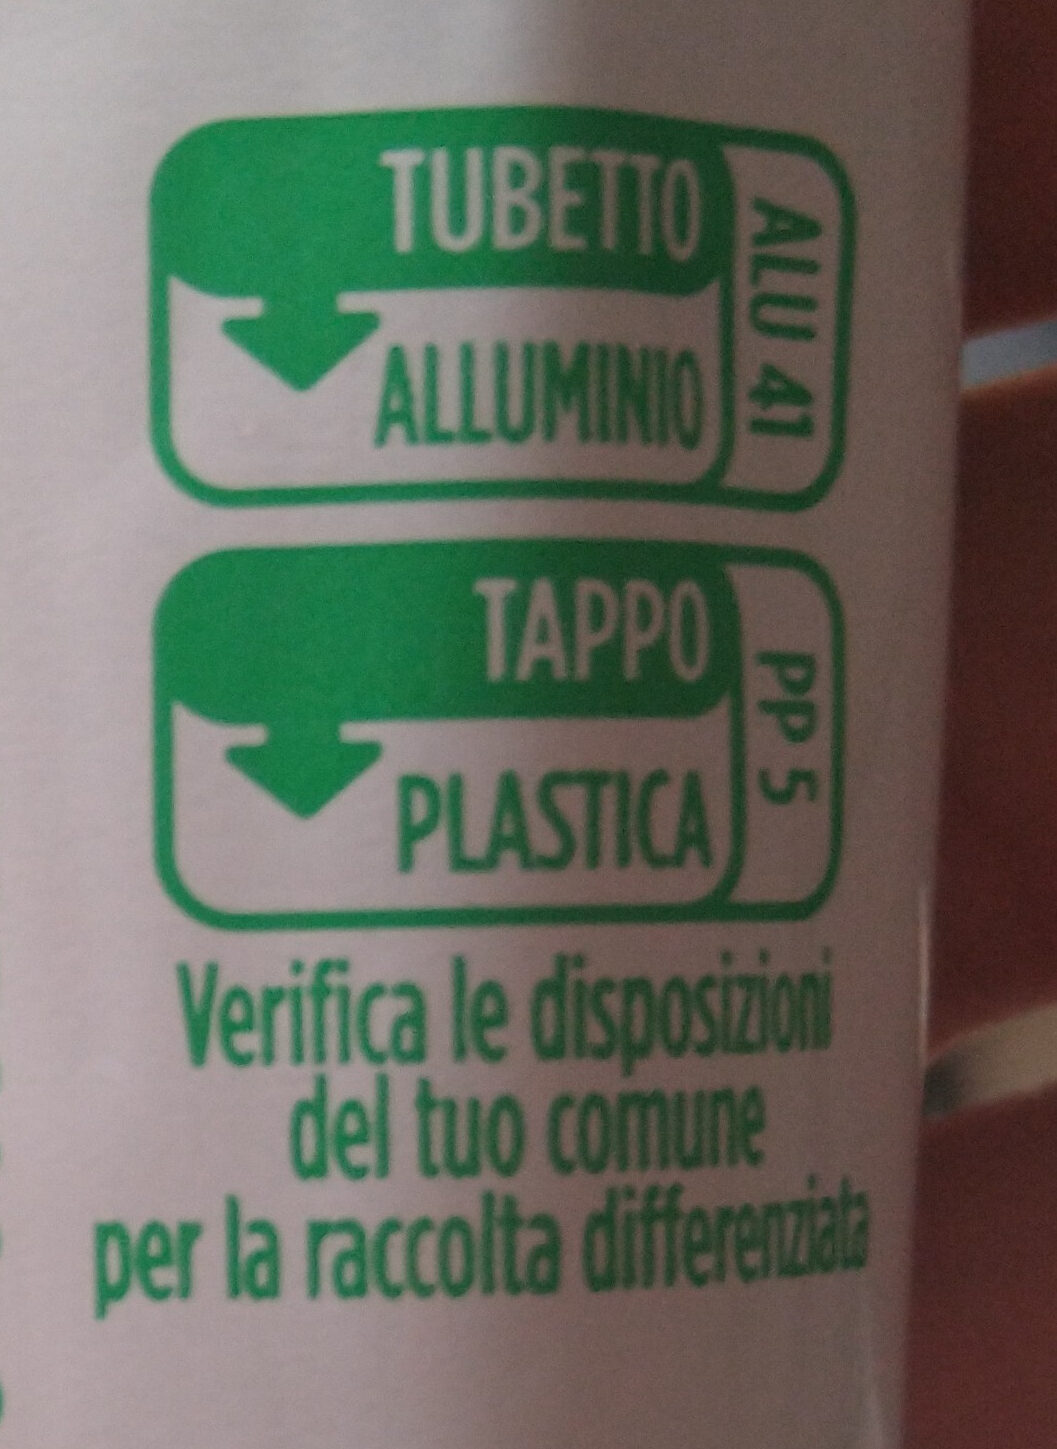 Le verdurine - Istruzioni per il riciclaggio e/o informazioni sull'imballaggio